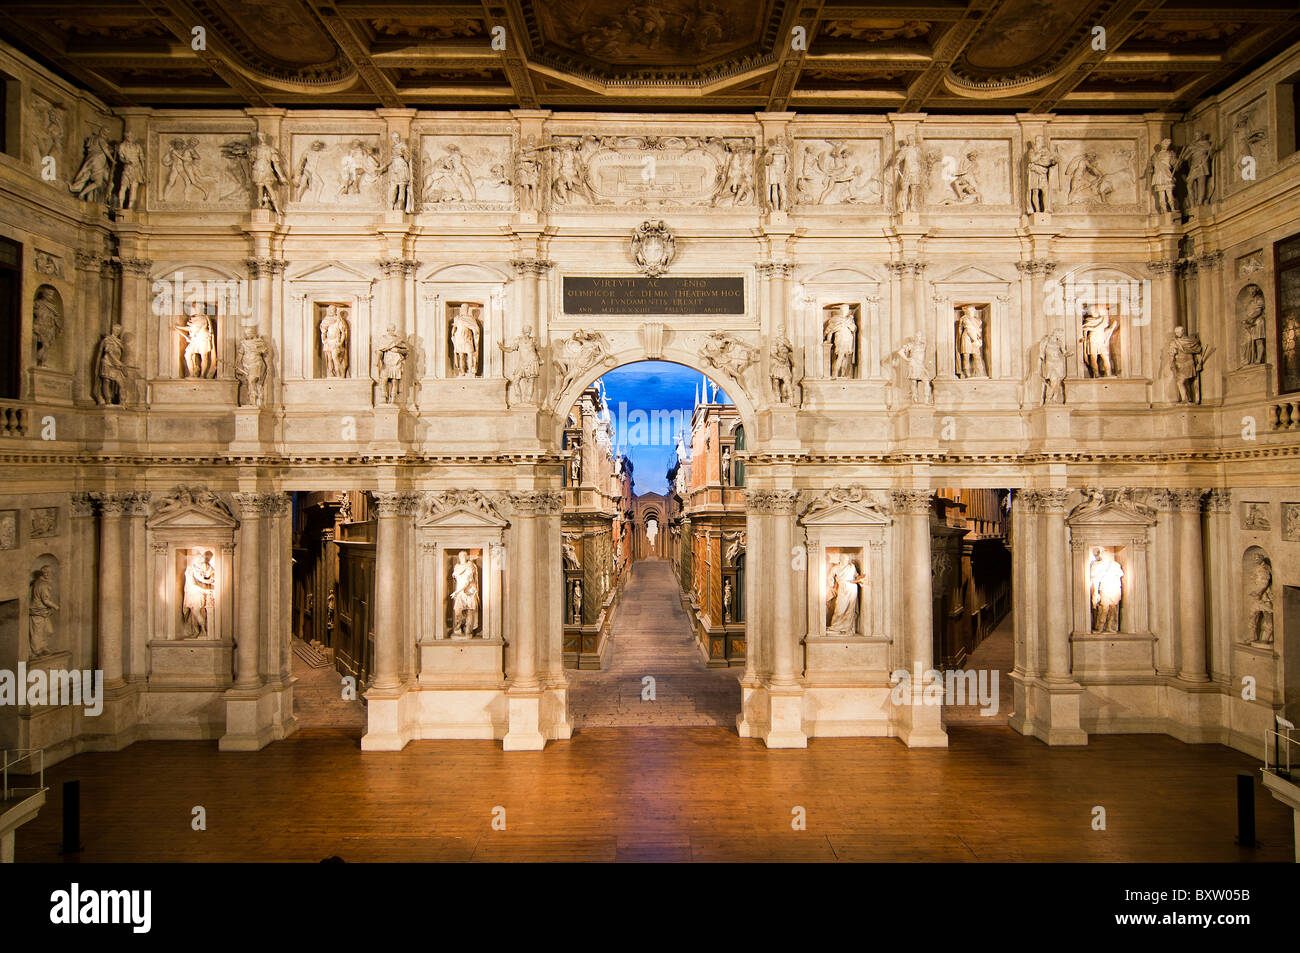 Vista de la escena tridimensional del Teatro Olímpico o el Teatro Olímpico, diseñado por el arquitecto Andrea Palladio, Vicenza, Italia Foto de stock